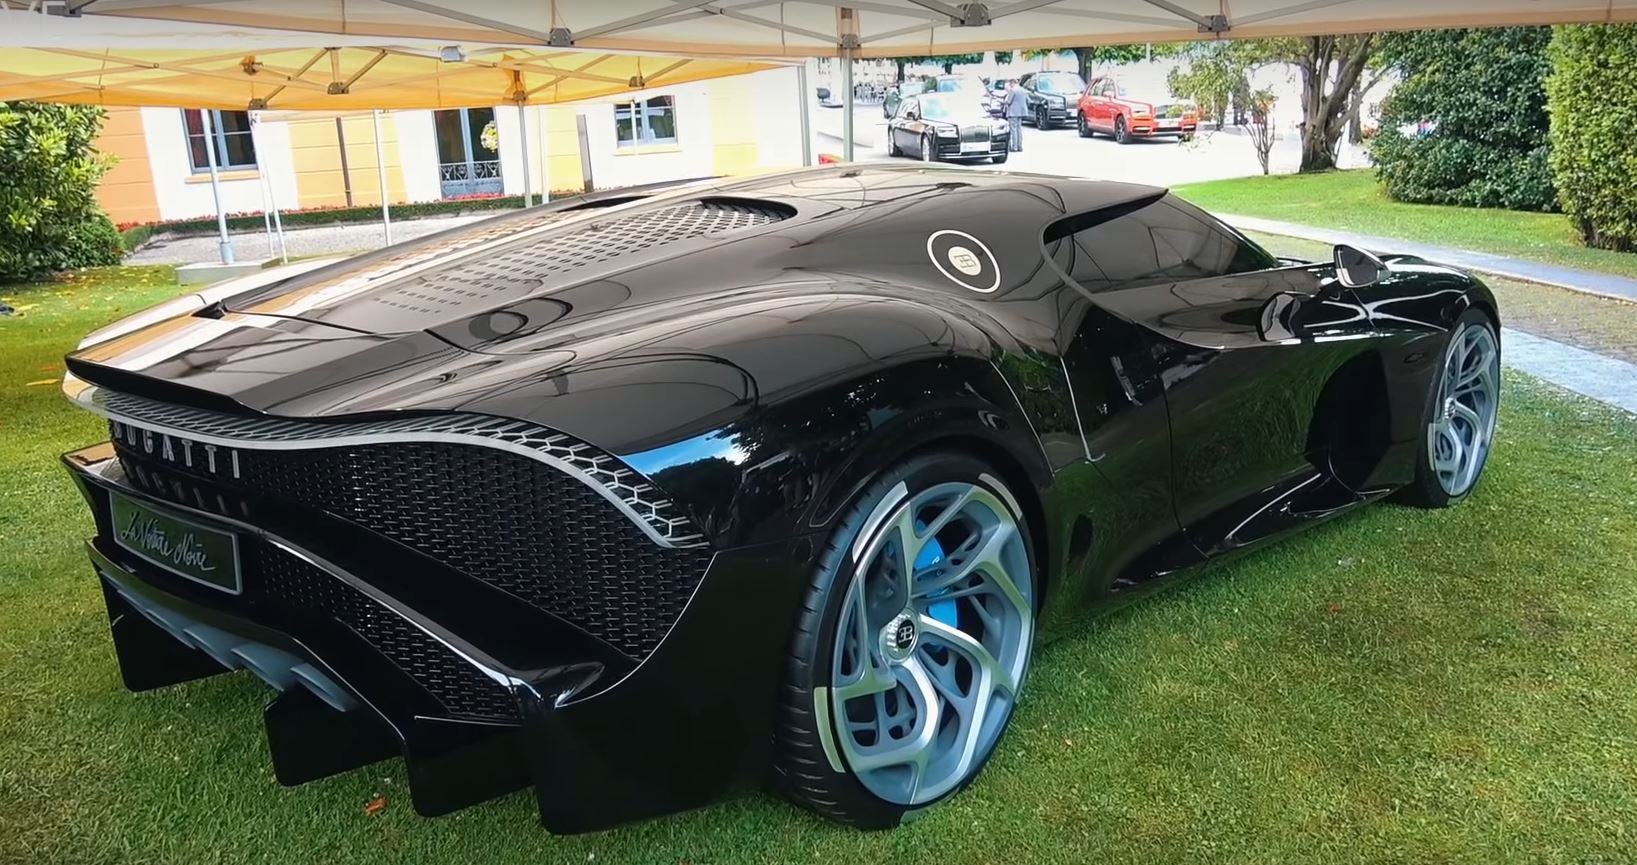 Bugatti La Voiture Noire Spotted at Villa d'Este As World's Most